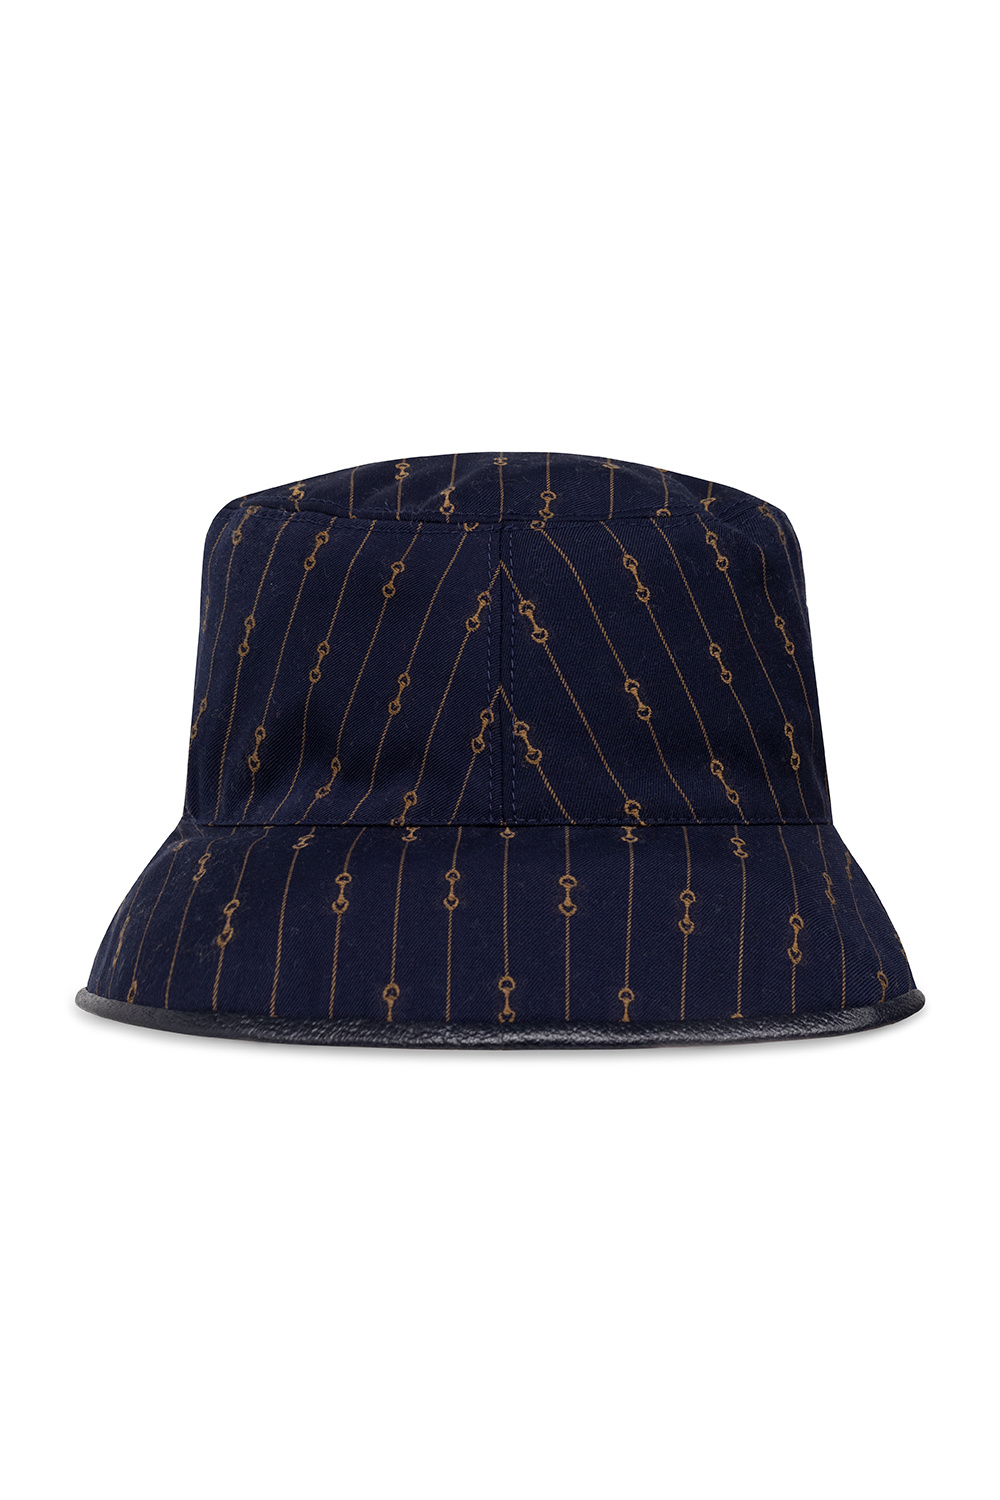 Louis Vuitton LV Uptown Bucket Hat, Blue, M